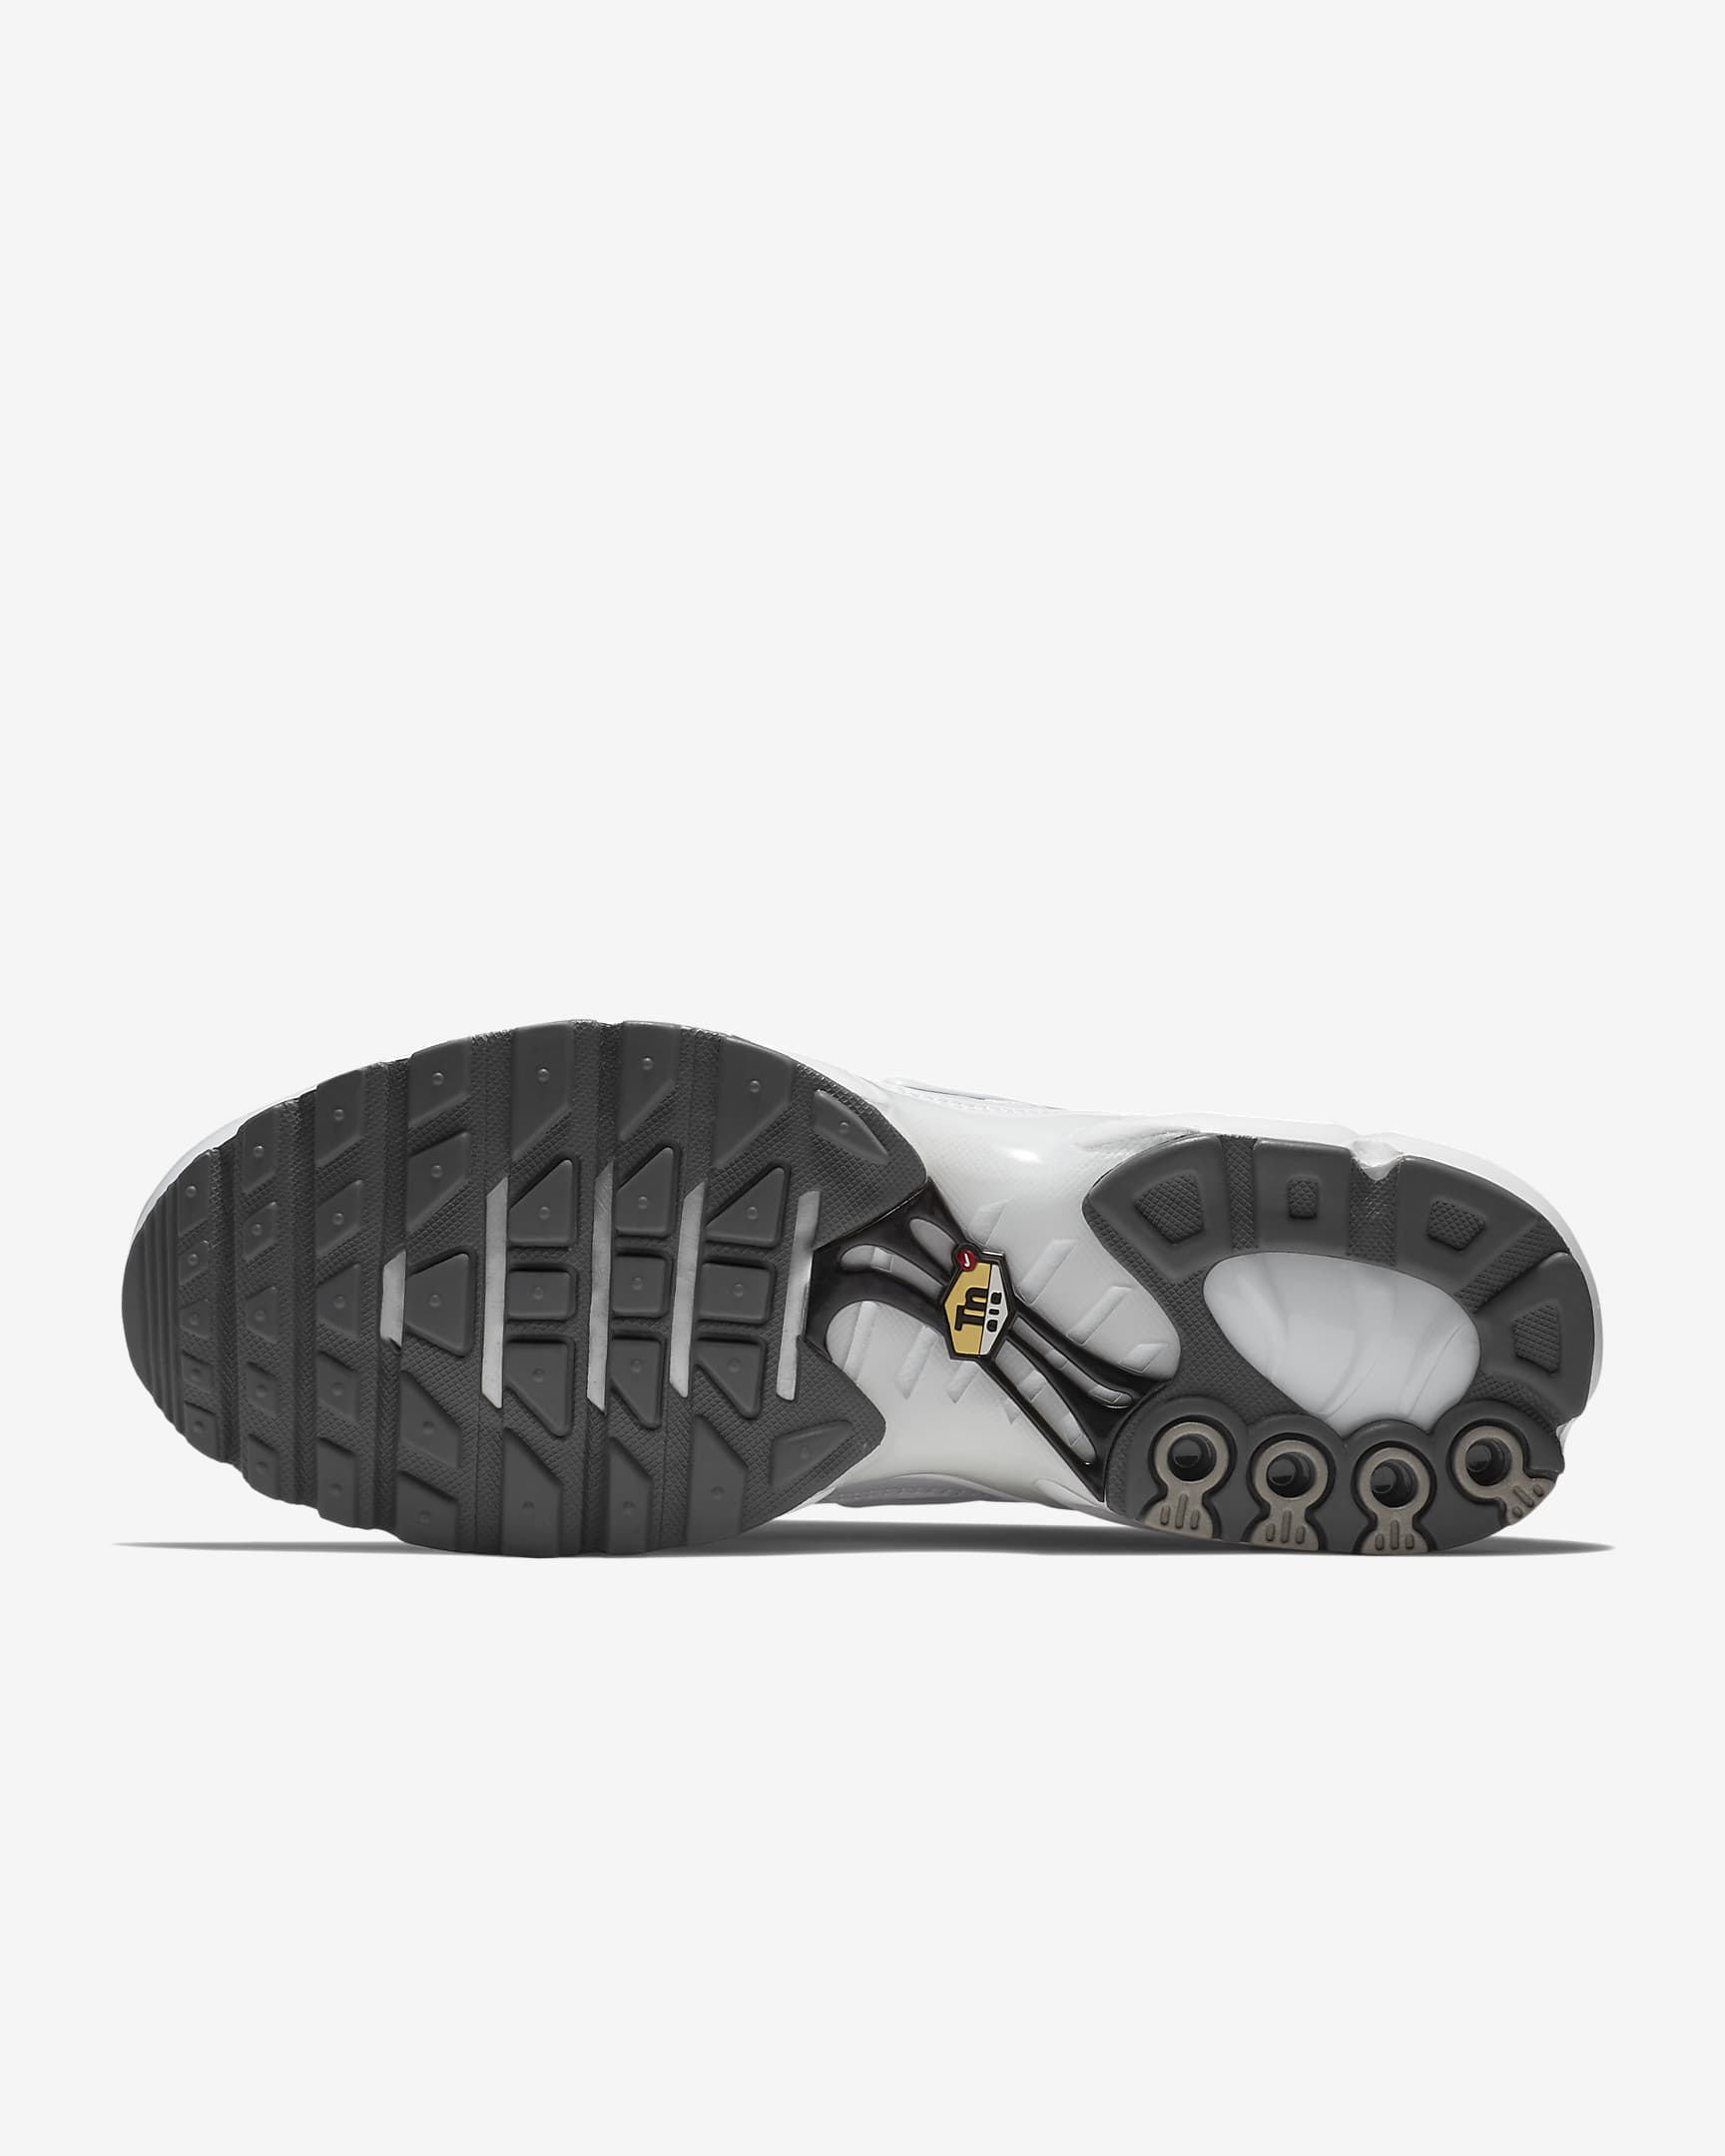 Chaussure Nike Air Max Plus pour homme - Blanc/Noir/Cool Grey/Blanc